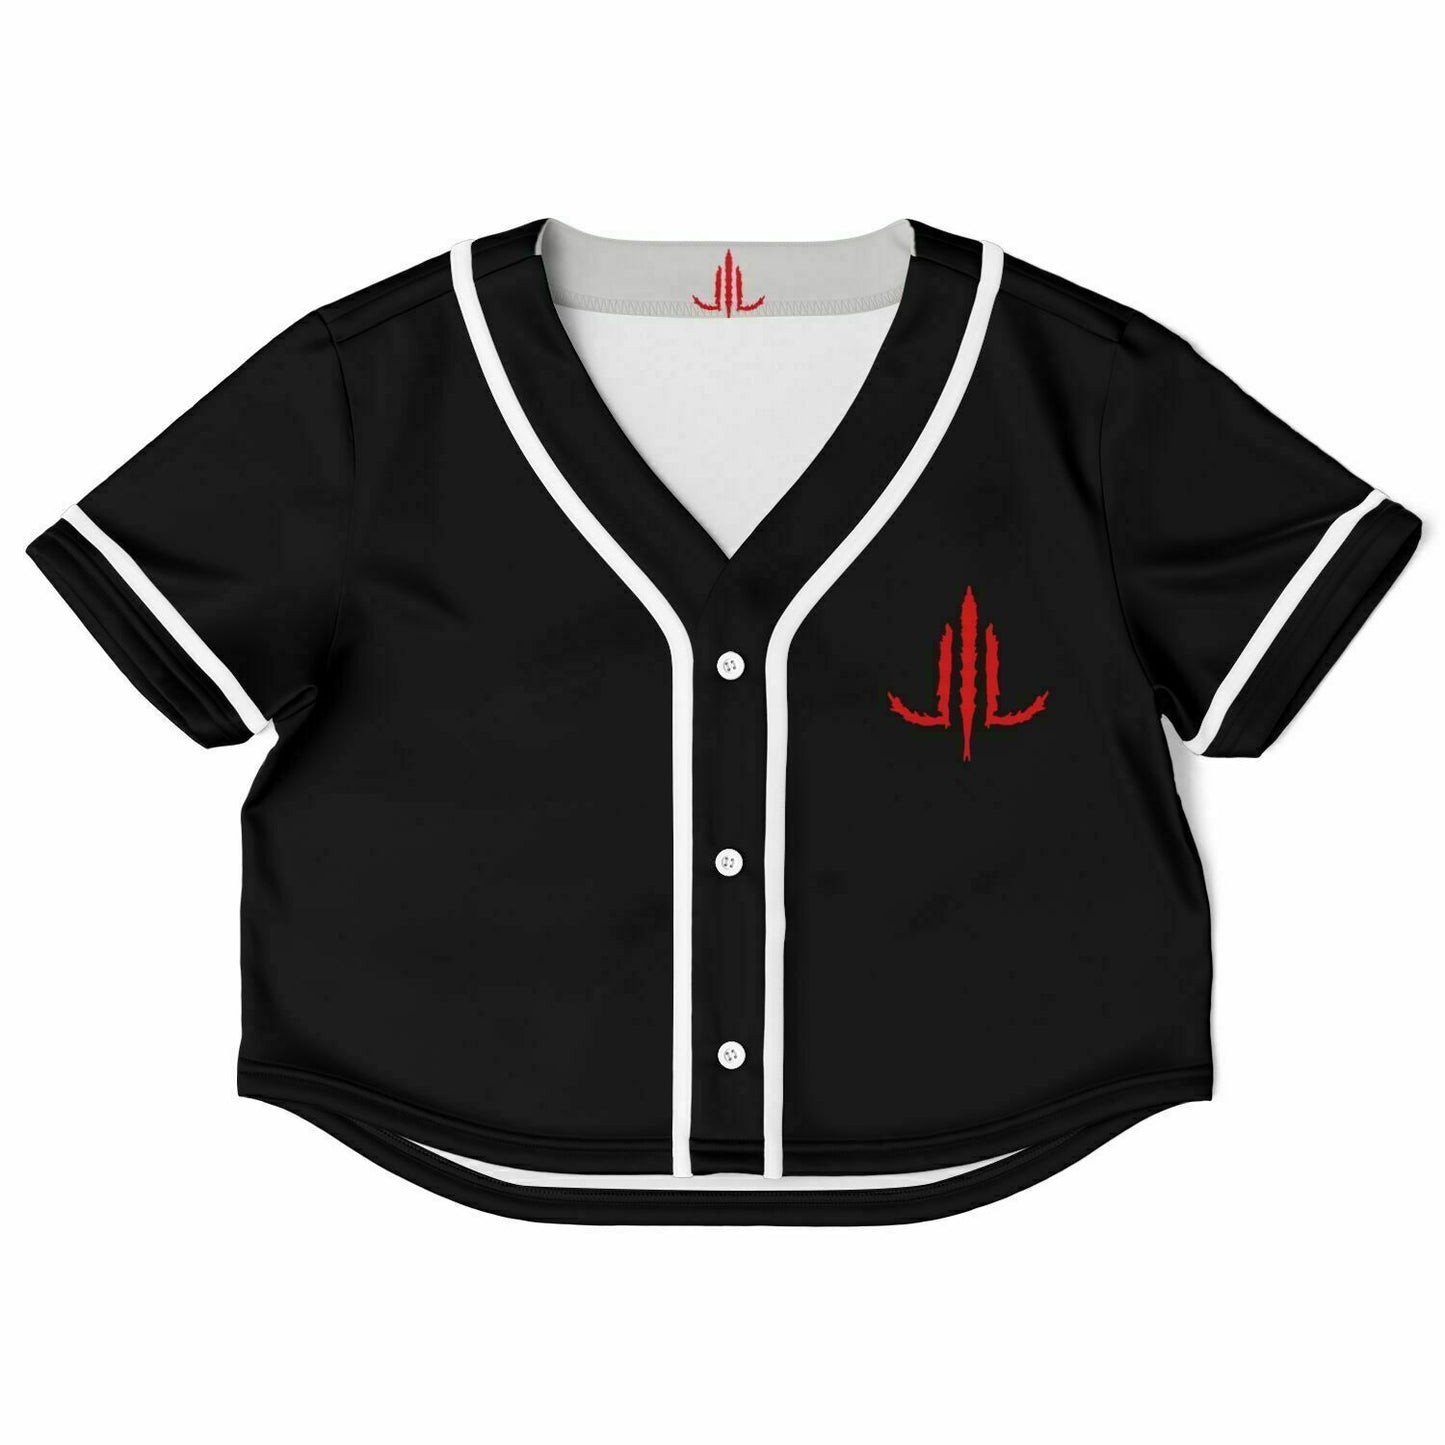 Traditional Bat Cropped Baseball Jersey